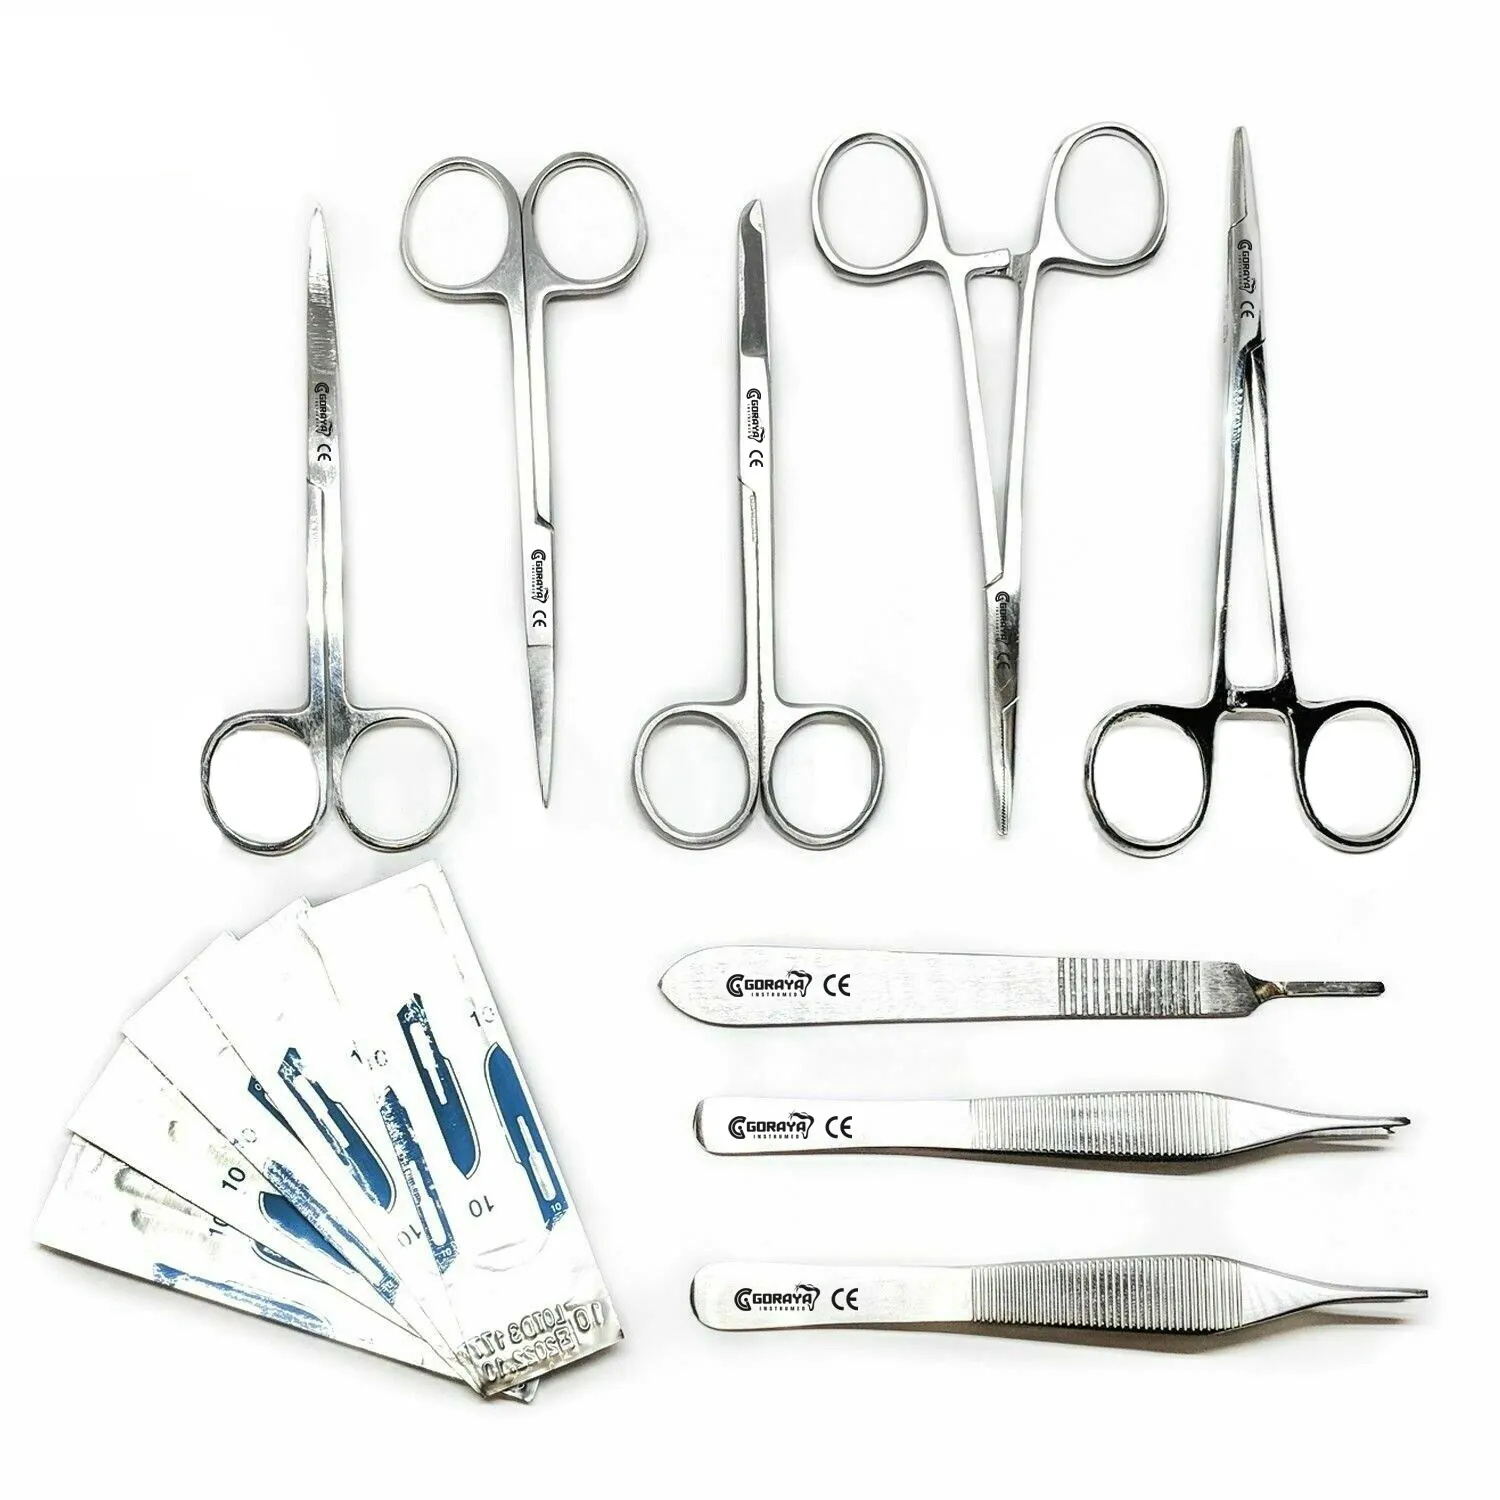 Vendita calda GORAYA tedesco 8 pezzi sutura lacerazione studente di medicina strumenti chirurgici Set Kit + lama #10 CE approvato ISO